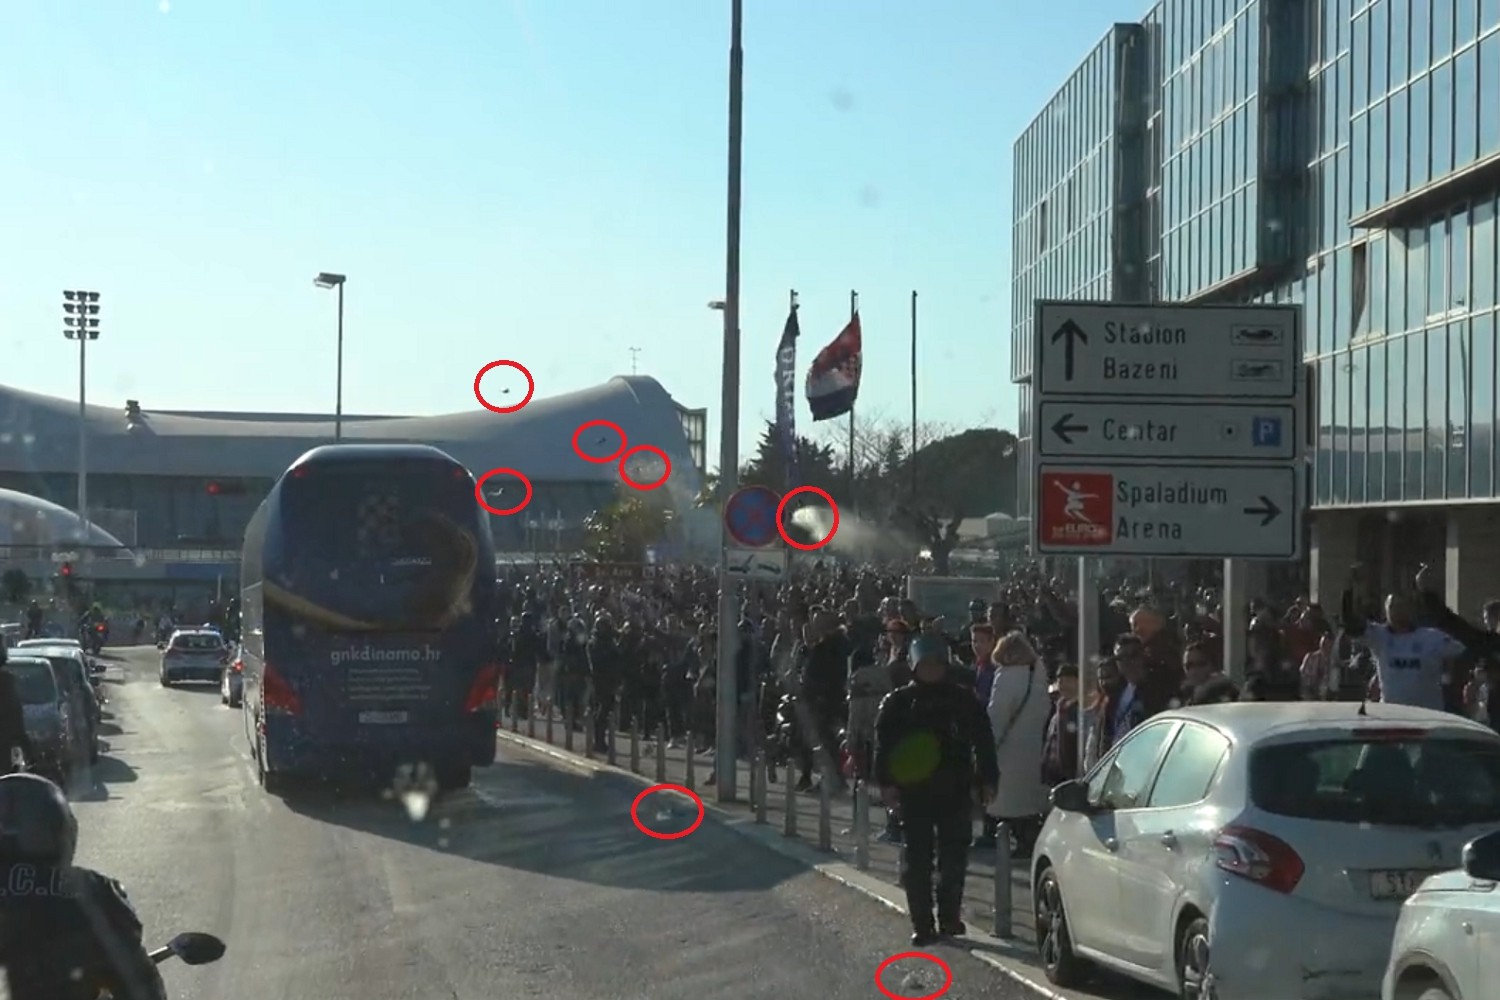 Autobus Dinama Zagrzeb zaatakowany przez pseudokibiców Hajduka Split. Policja poszukuje sprawców